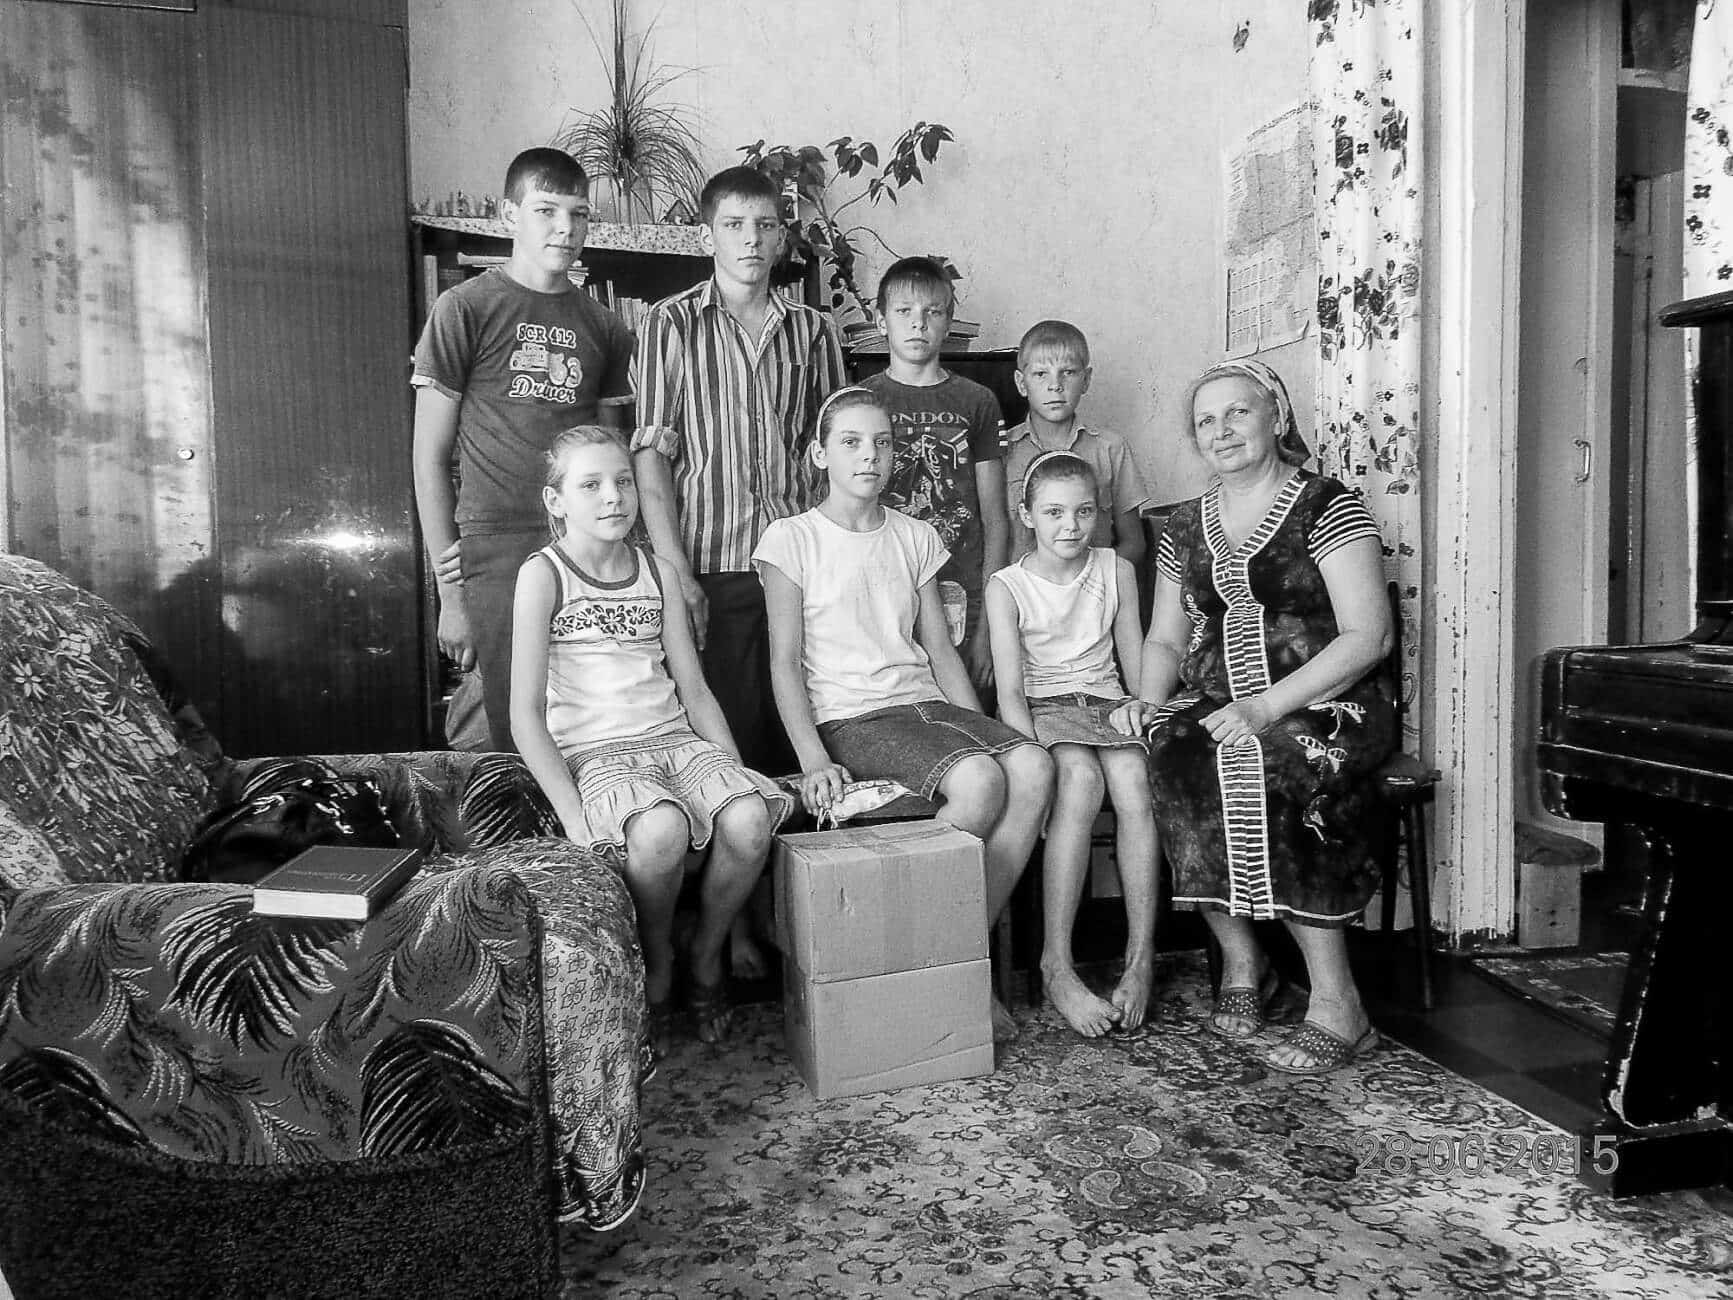 Witwe Redkina mit Kindern bekommen Lebensmittelpakete